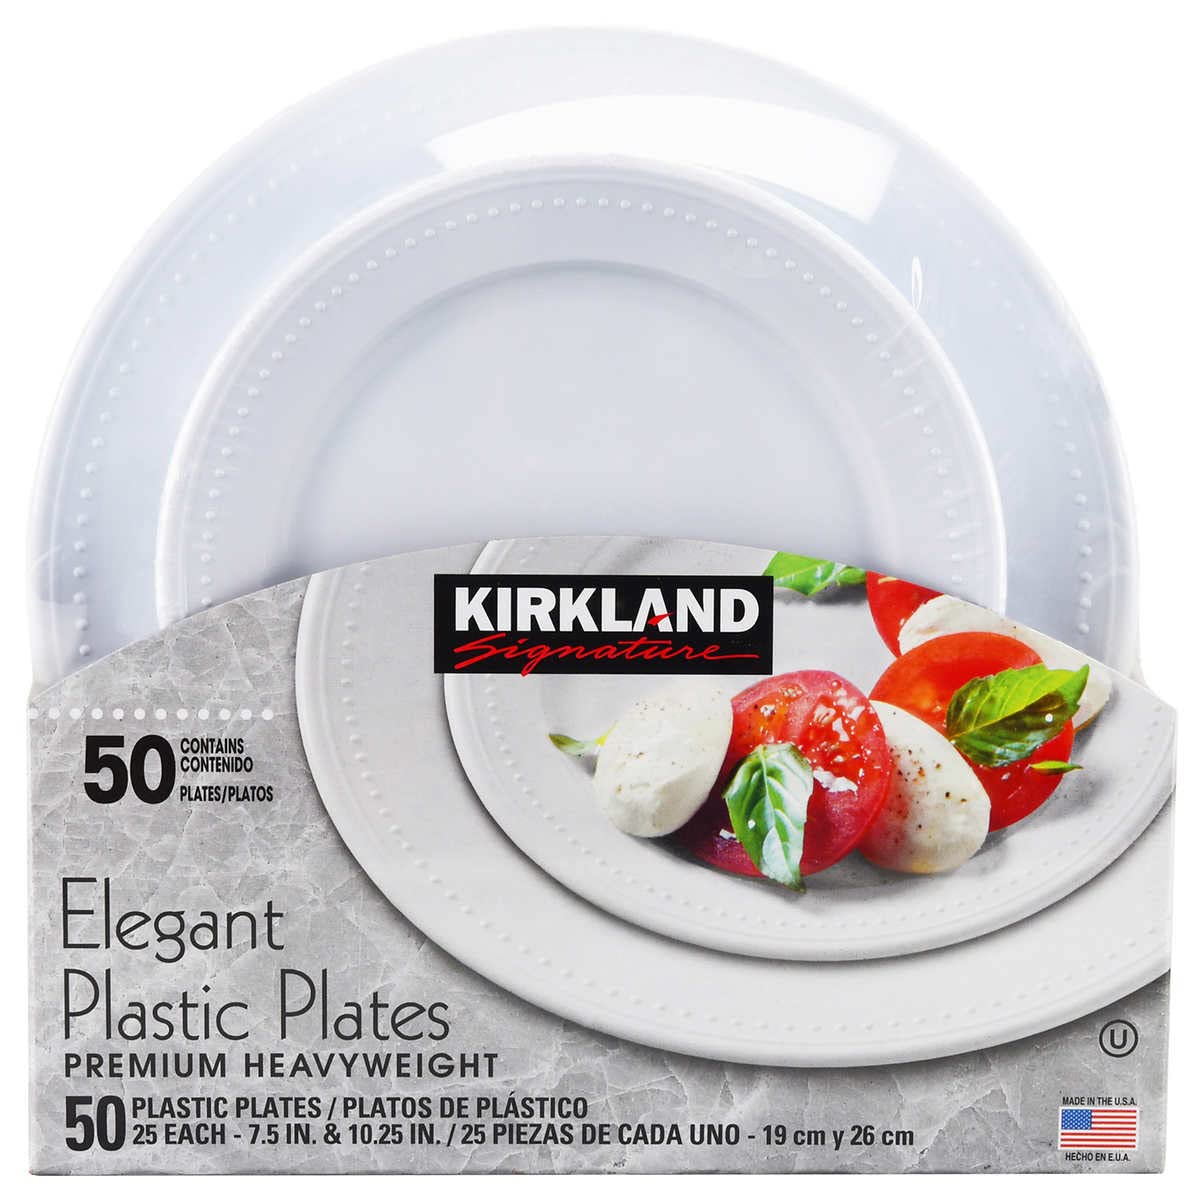 KIRKLAND(カークランド) エレガント プラスティック プレーツ 50枚セット(19cm×25枚、26cm×25枚)